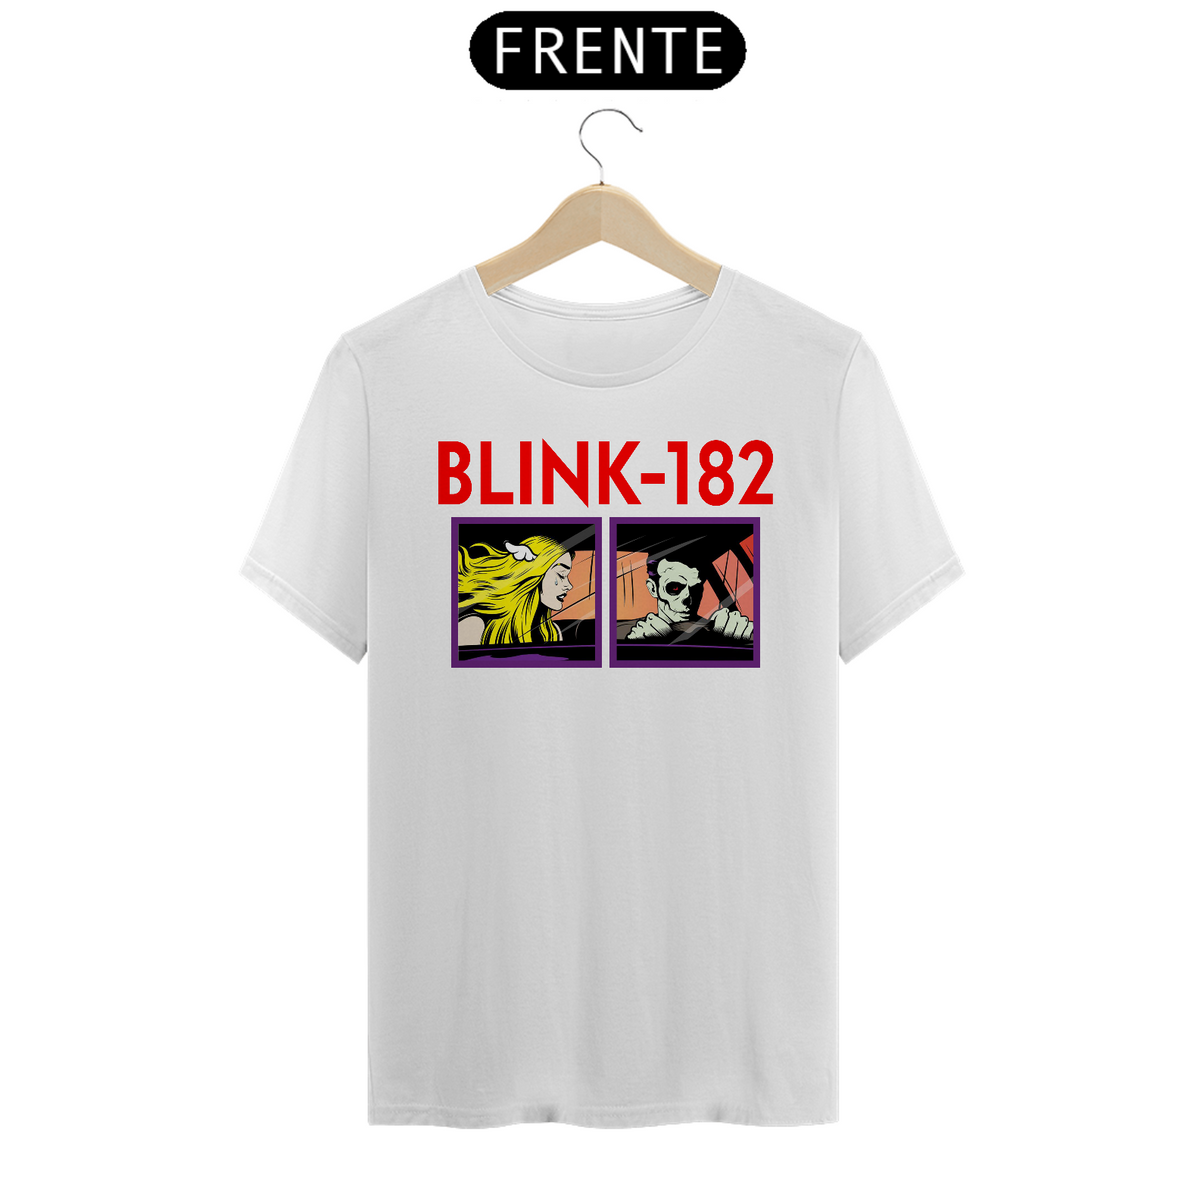 Nome do produto: Blink-182 \